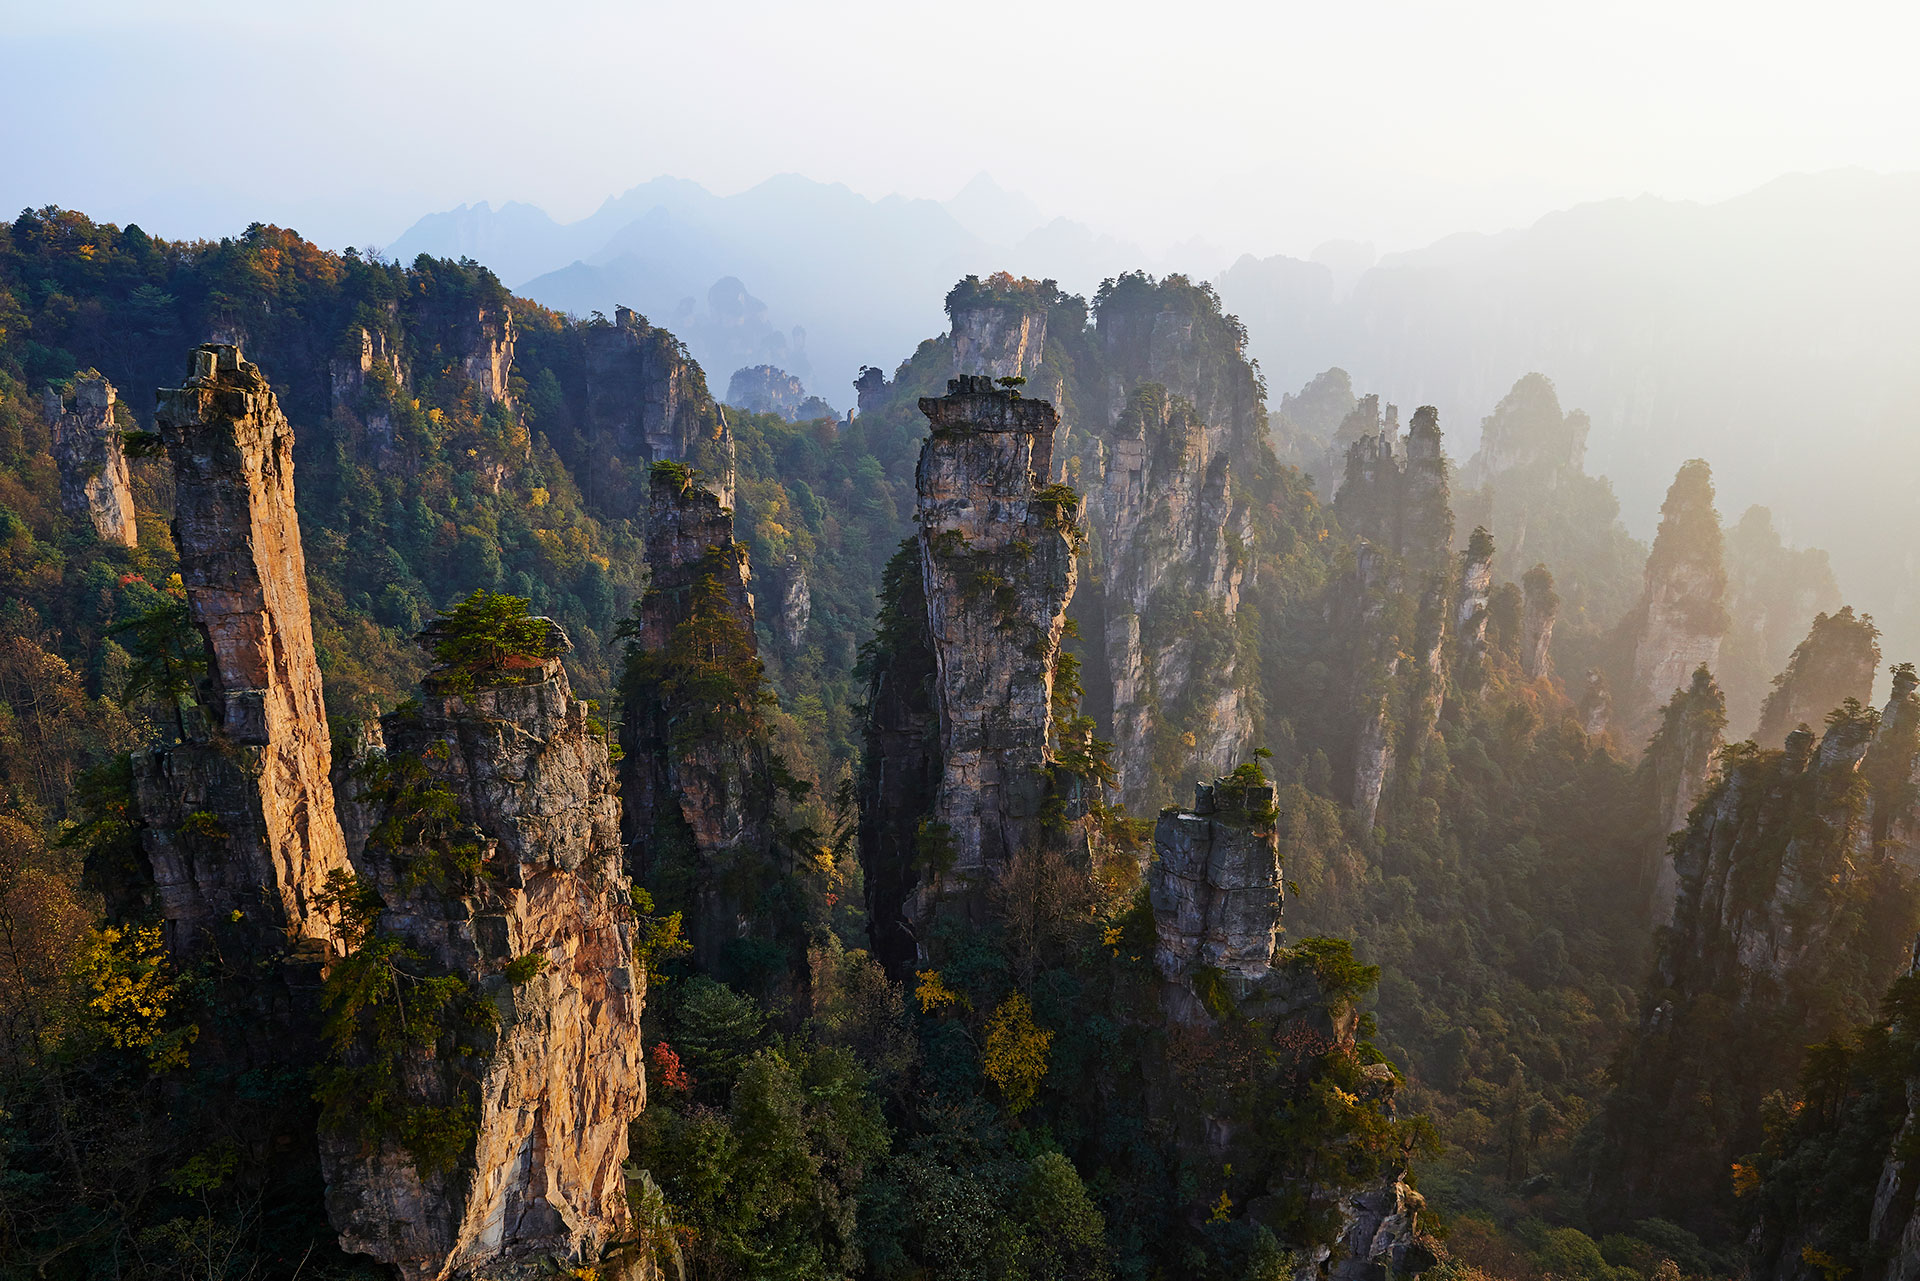 Los 15 lugares más lindos del mundo, según Condé Nast Traveler